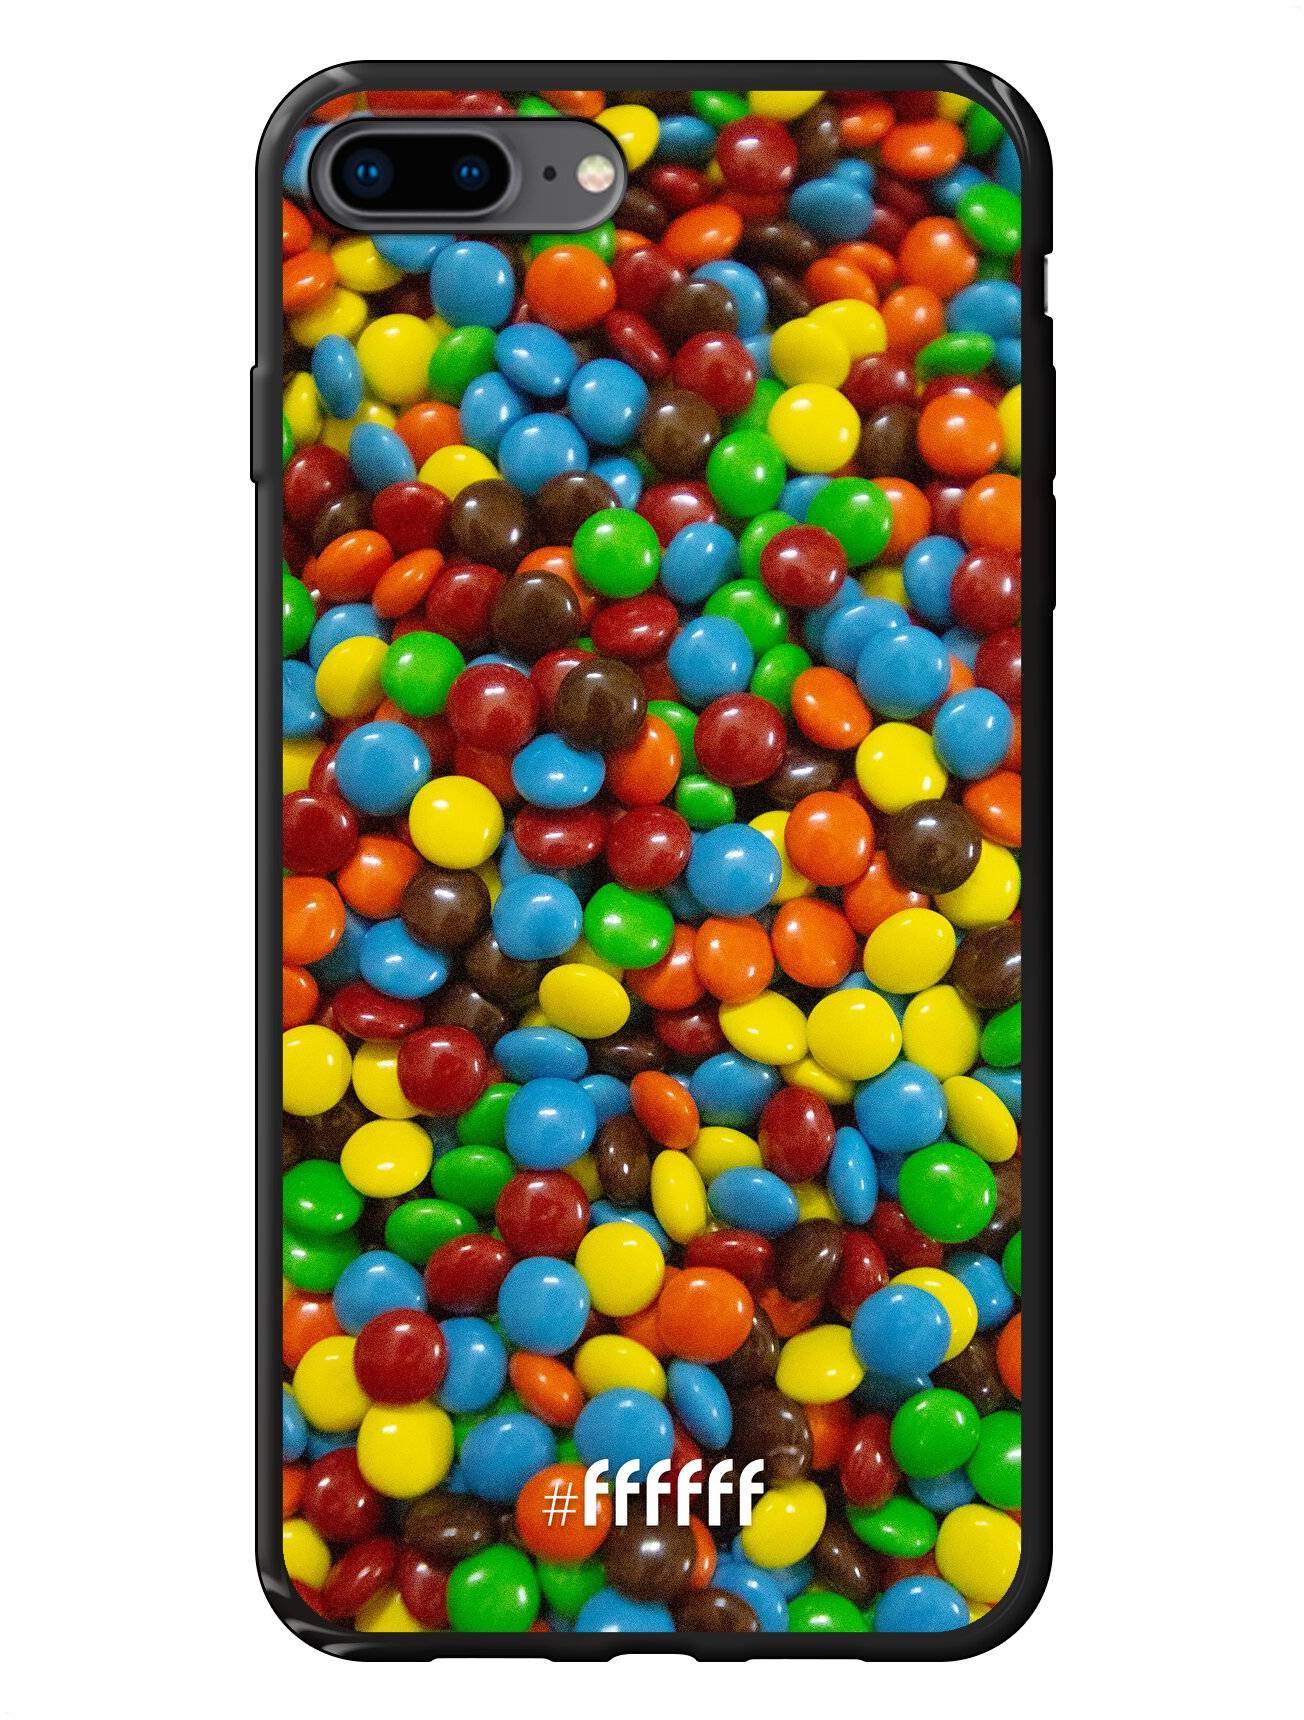 Chocolate Festival iPhone 7 Plus